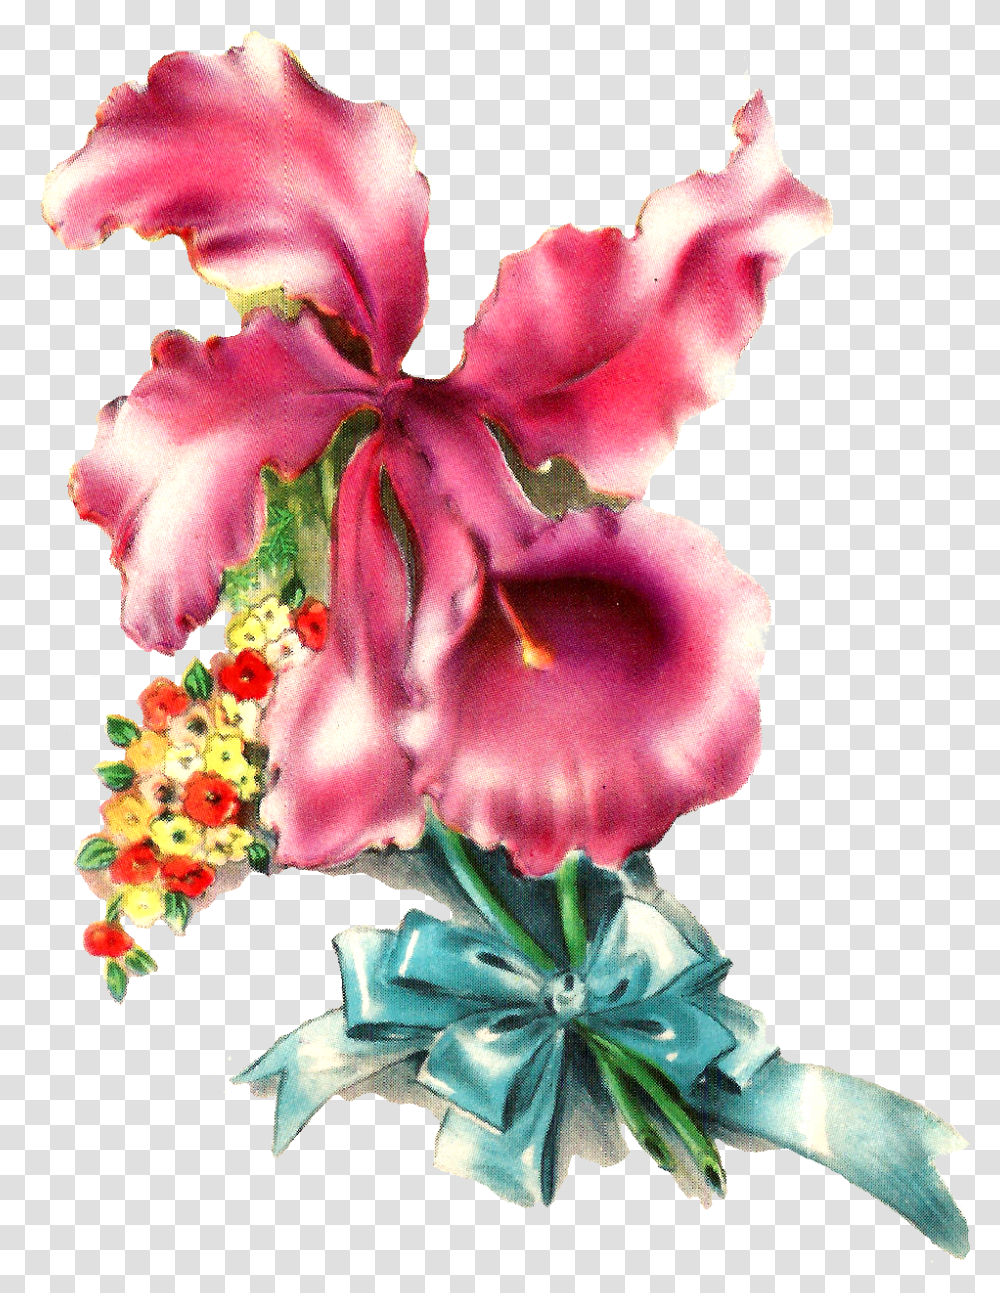 Orchid Flower Image Illustration Botanical Art Desert Rose, Plant, Blossom, Flower Arrangement, Gladiolus Transparent Png